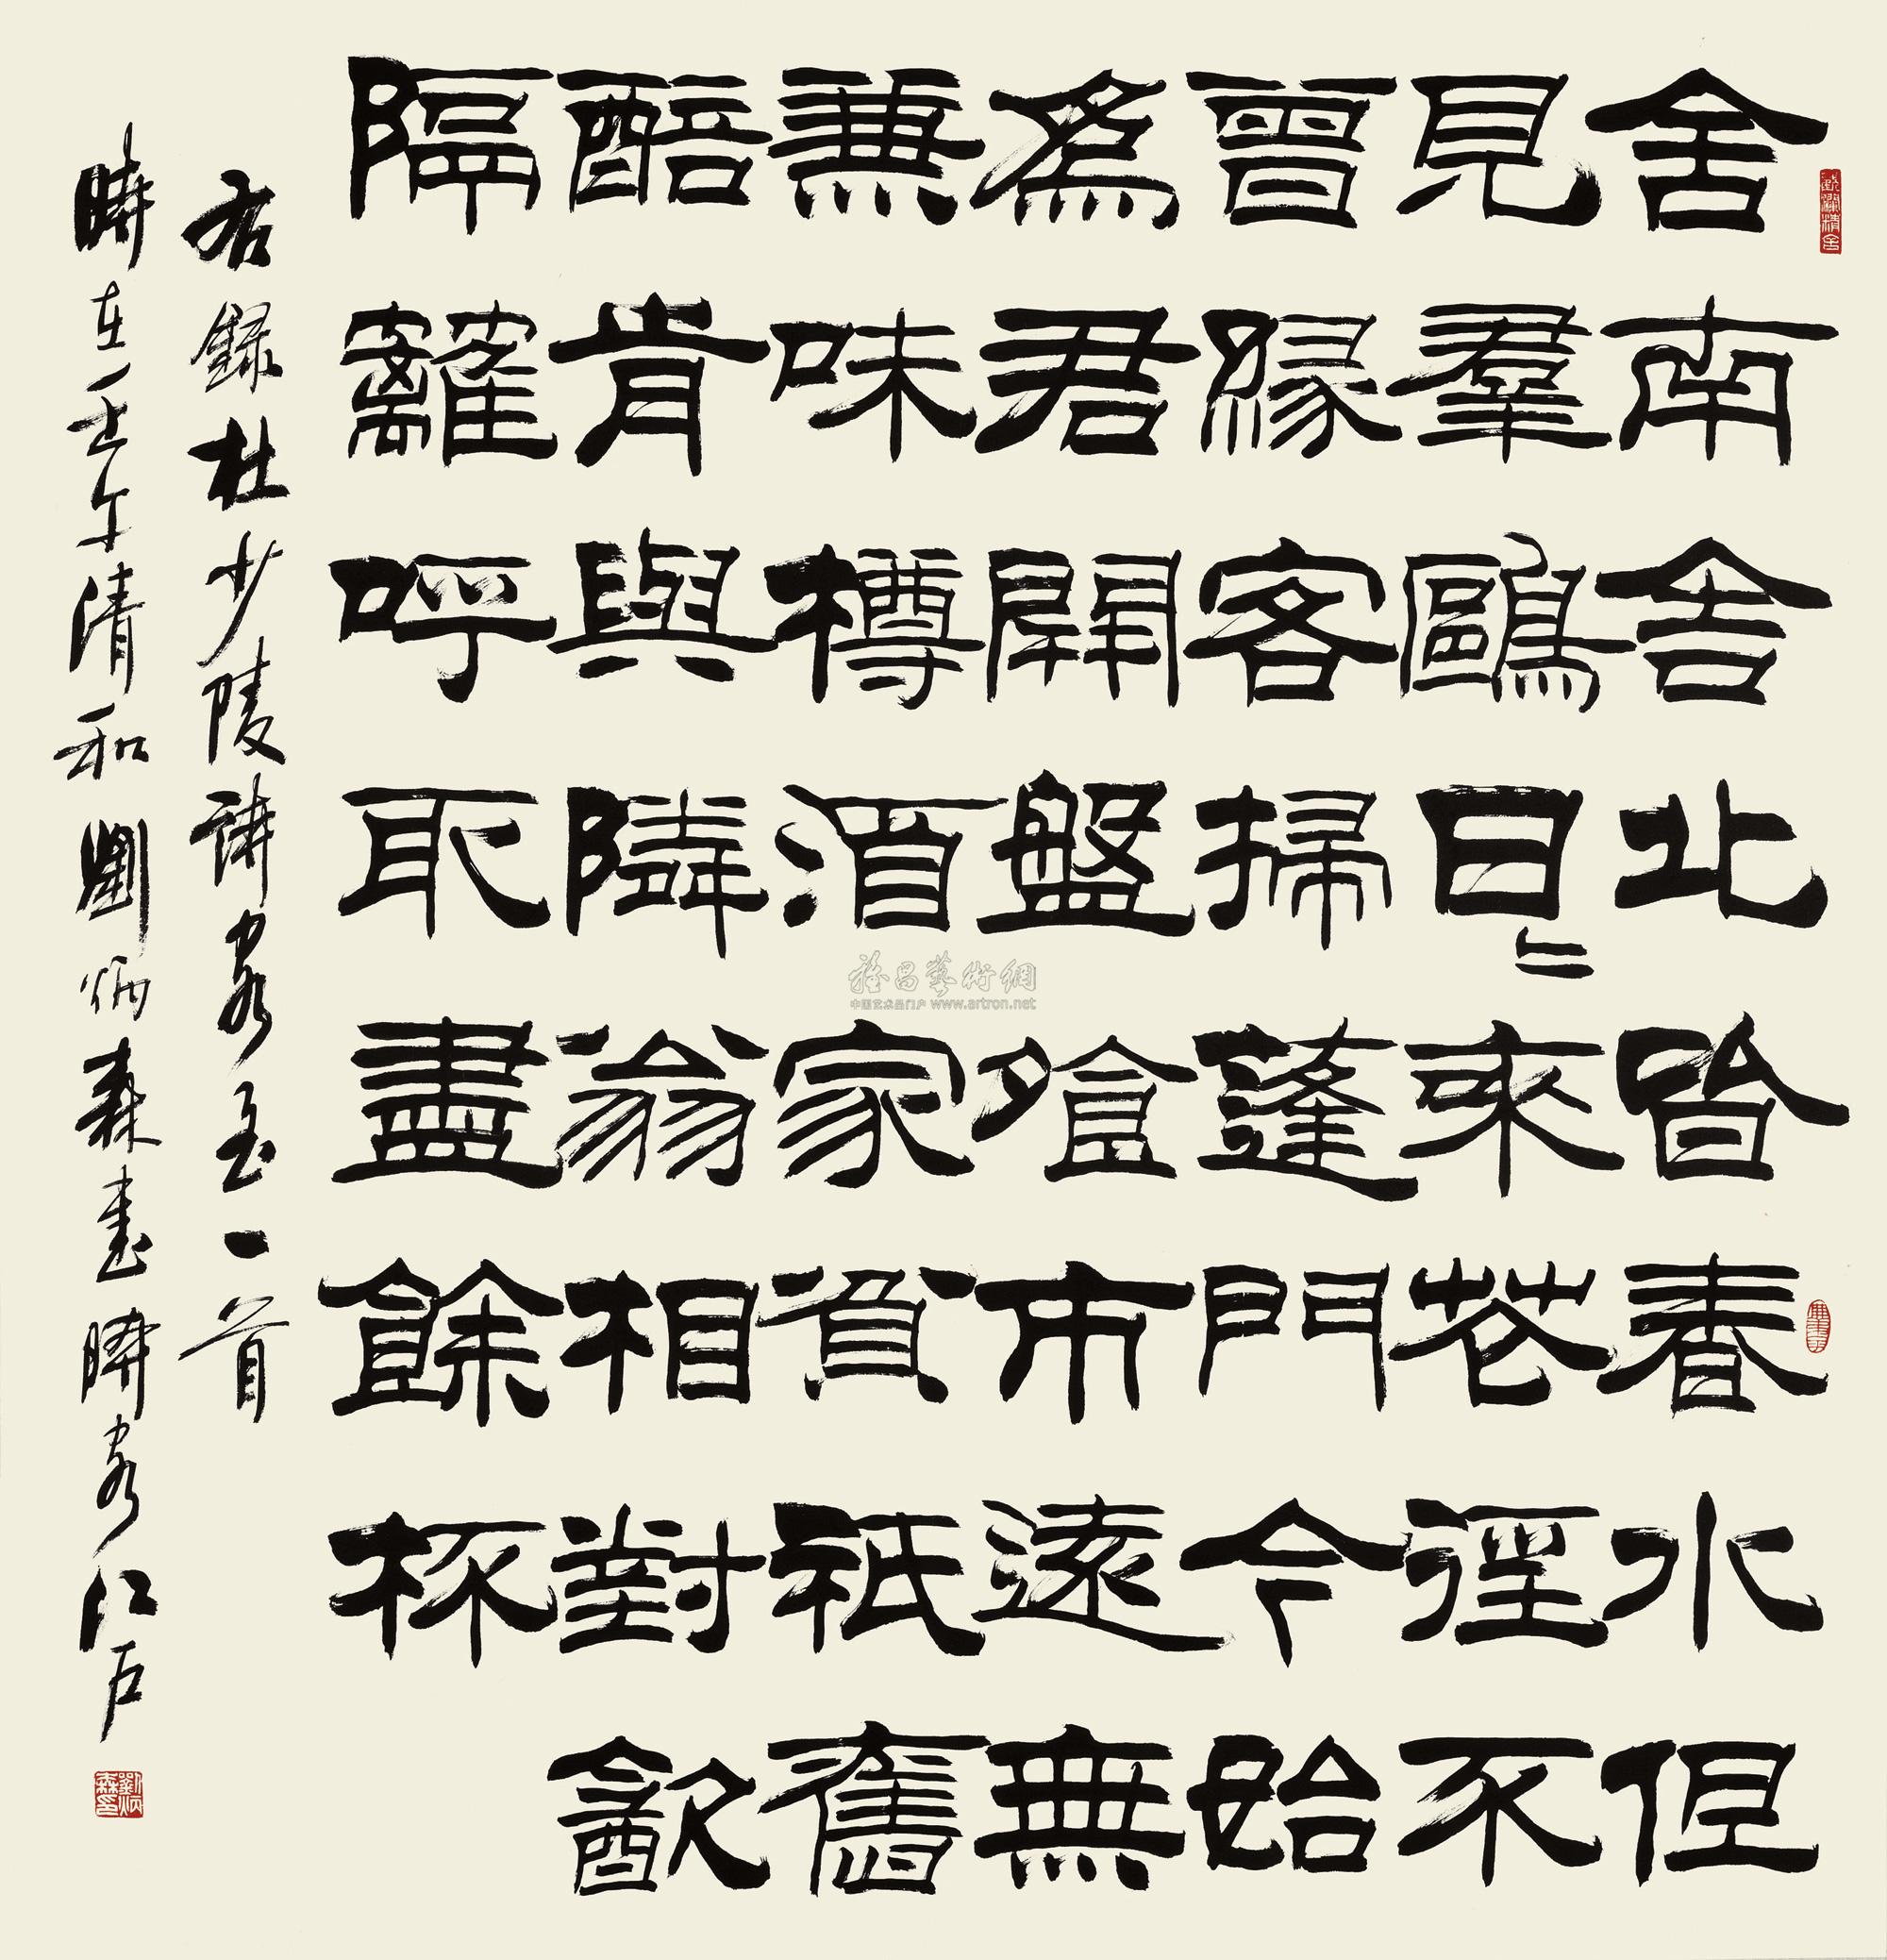 壬午(2002年)作 隶书杜甫诗 镜框作者刘炳森拍品分类中国书画